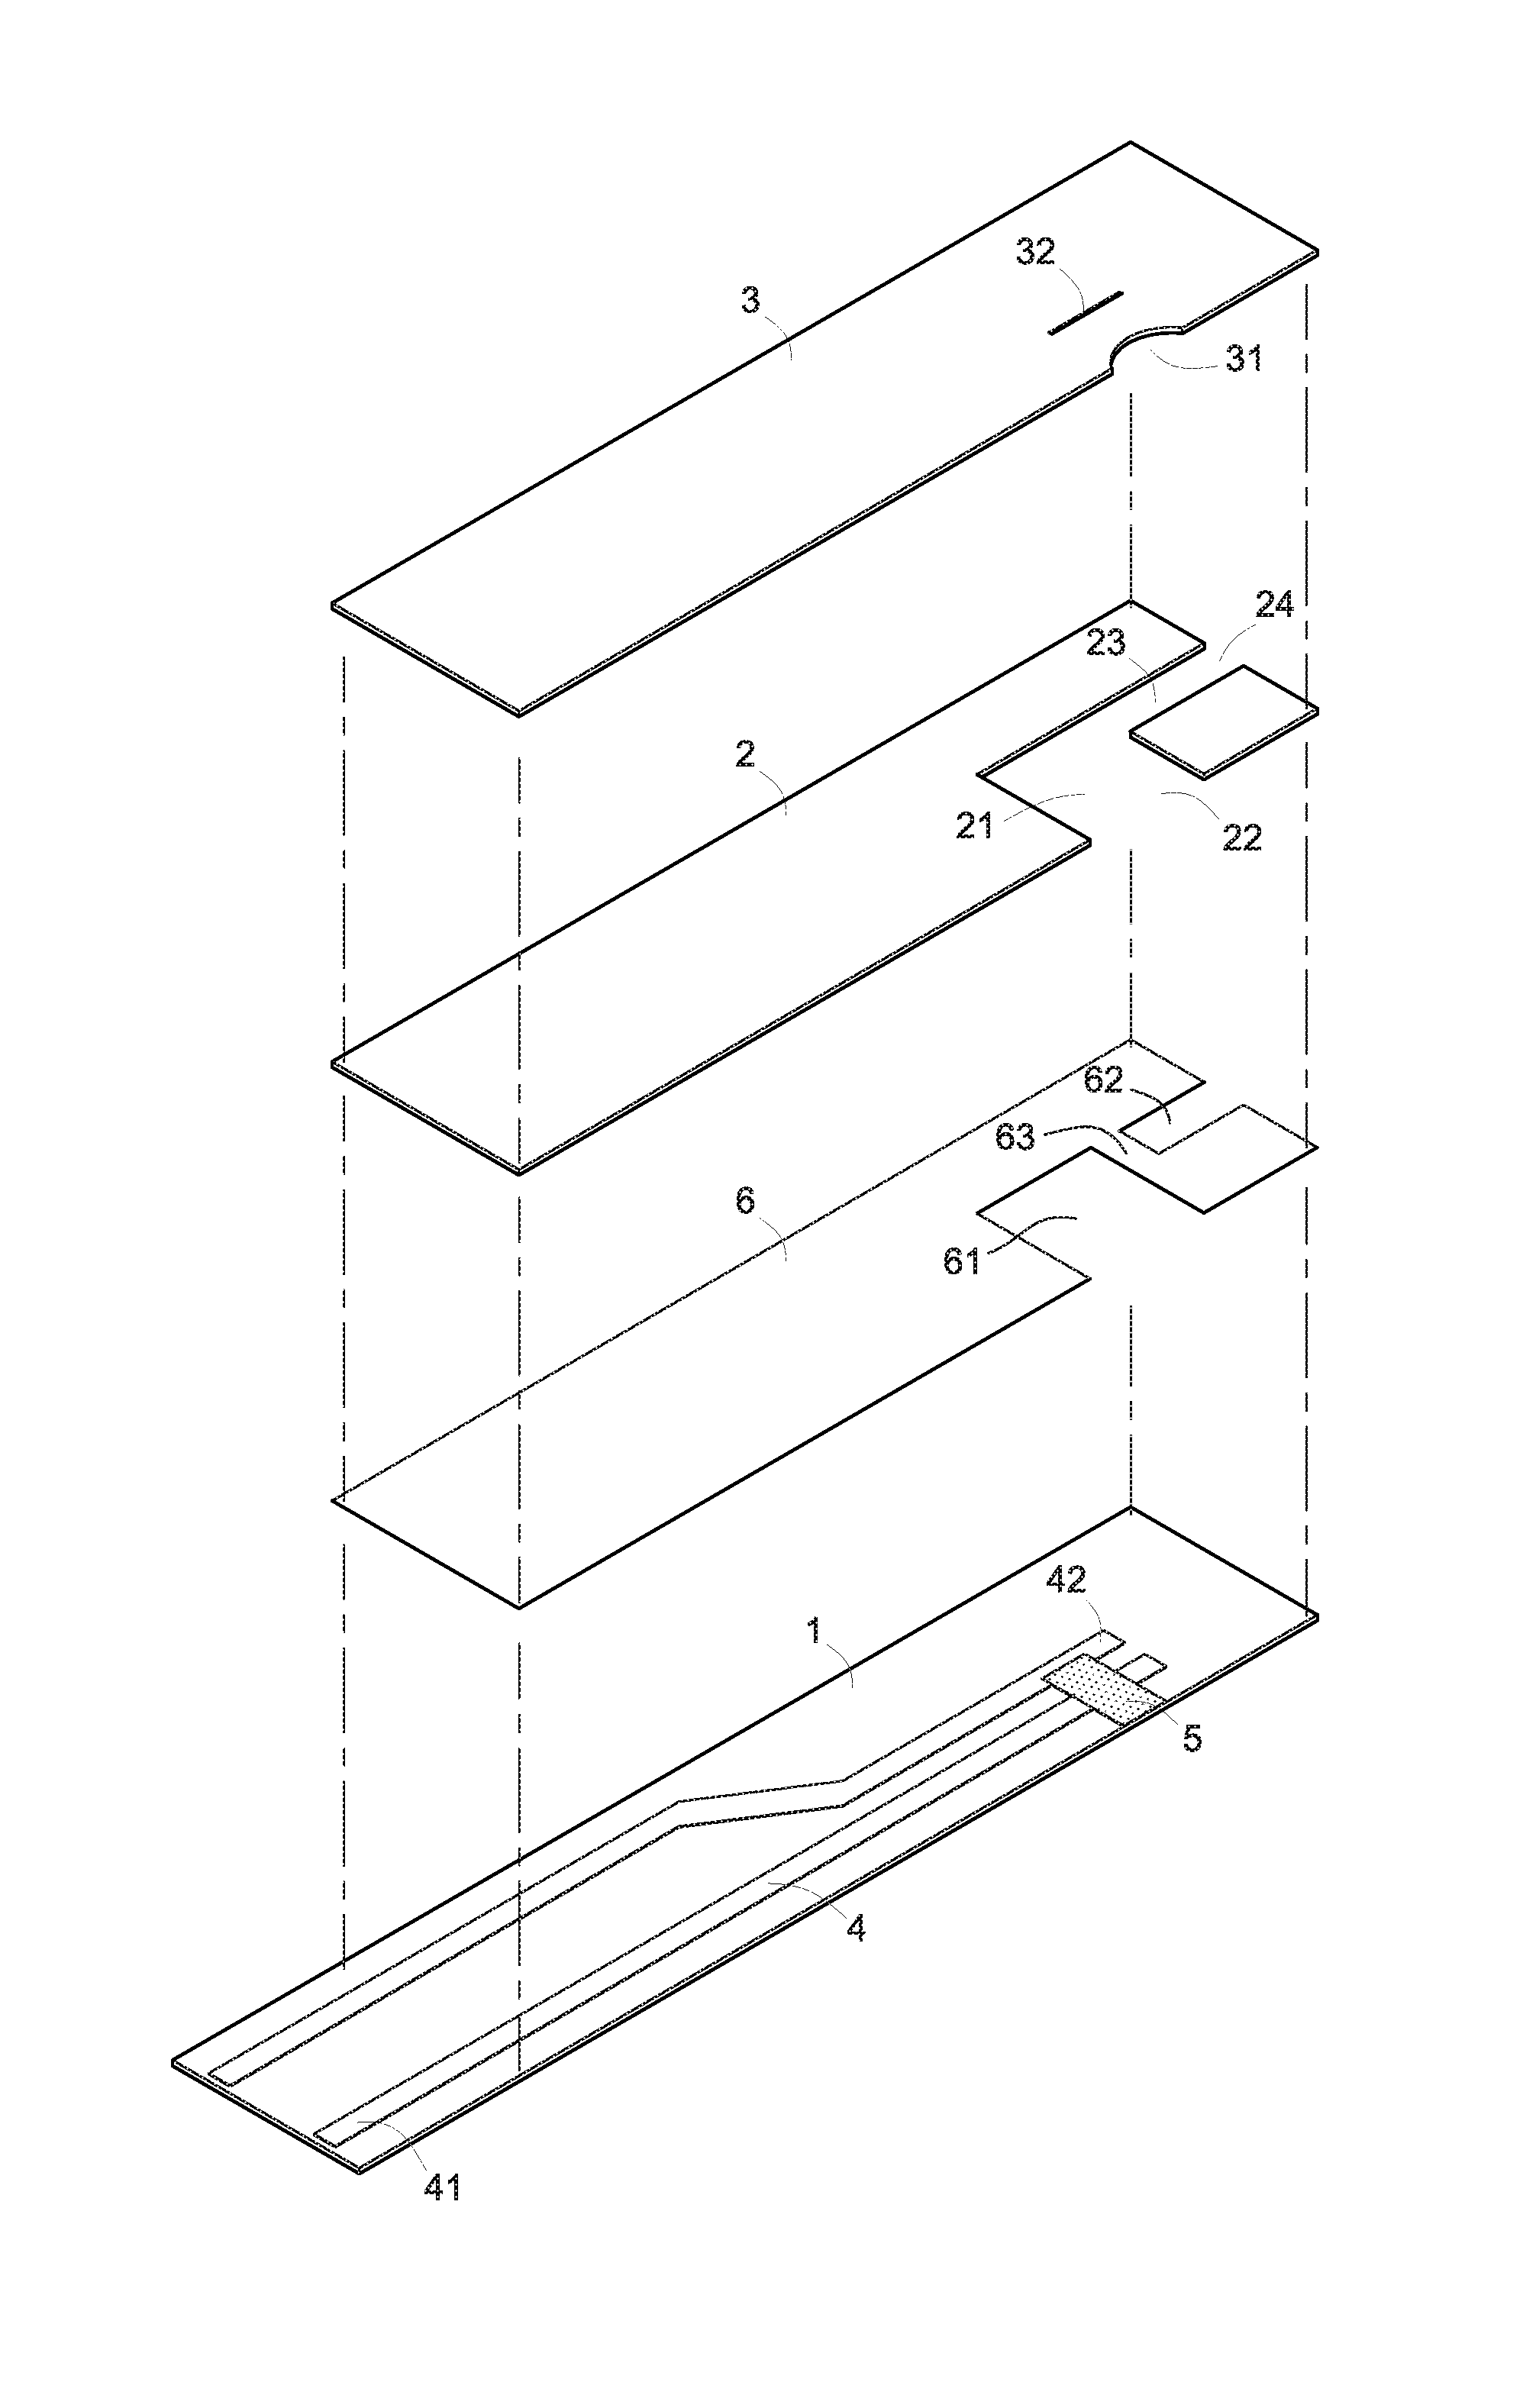 Test strip structure